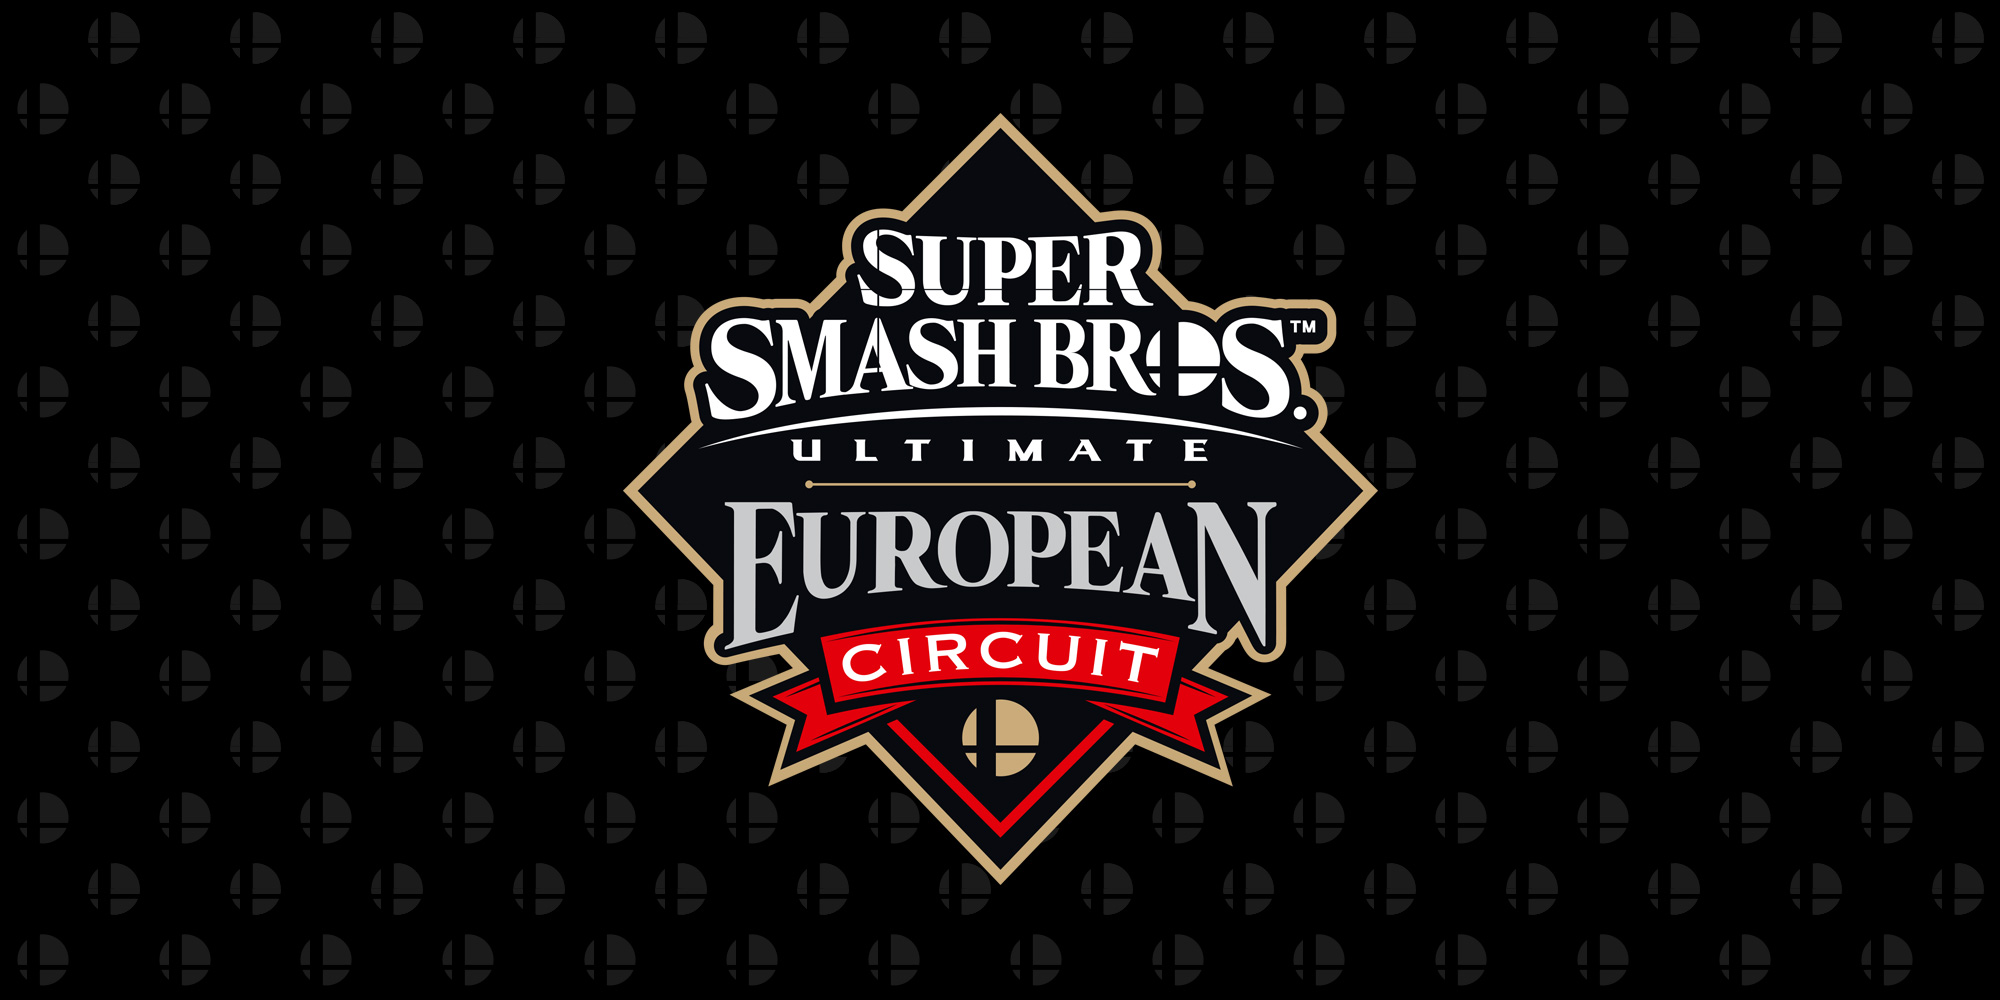 Leffen remporte la première place au tournoi DreamHack Winter 2019, le deuxième événement du Super Smash Bros. Ultimate European Circuit !